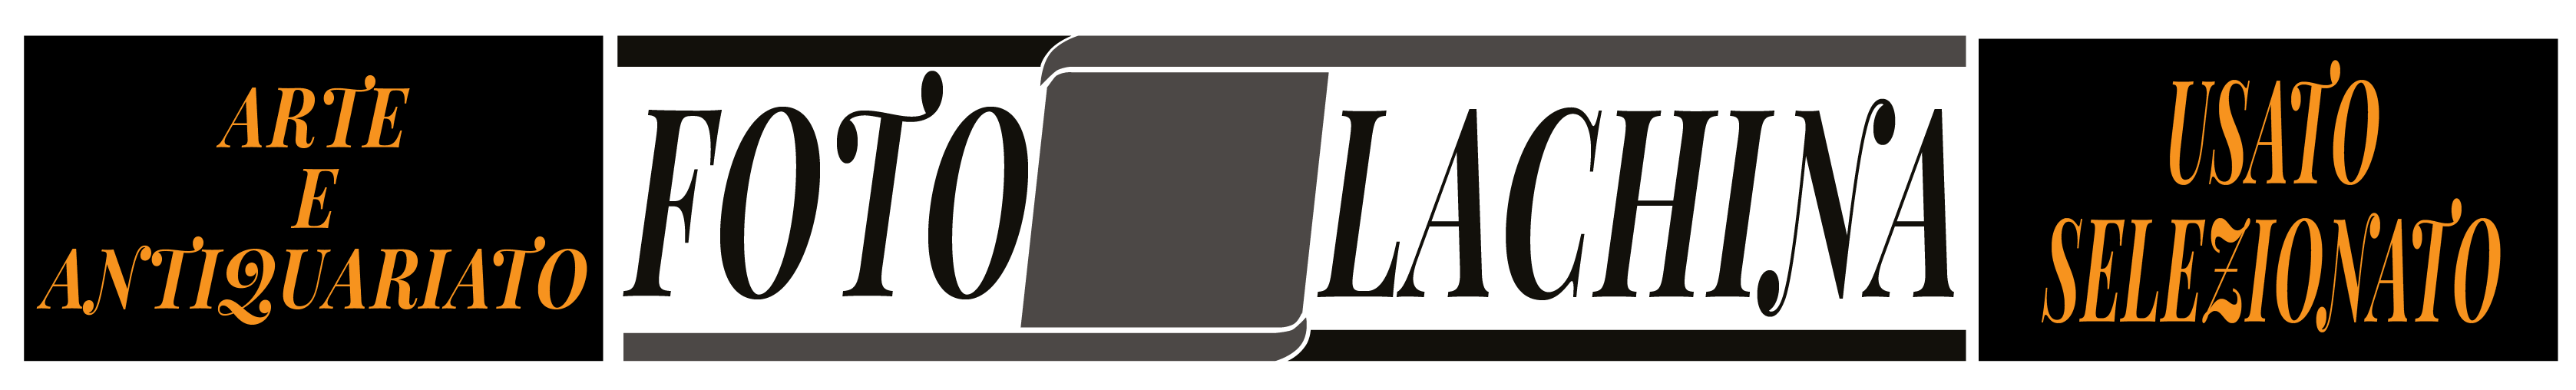 Foto Lachina Logo